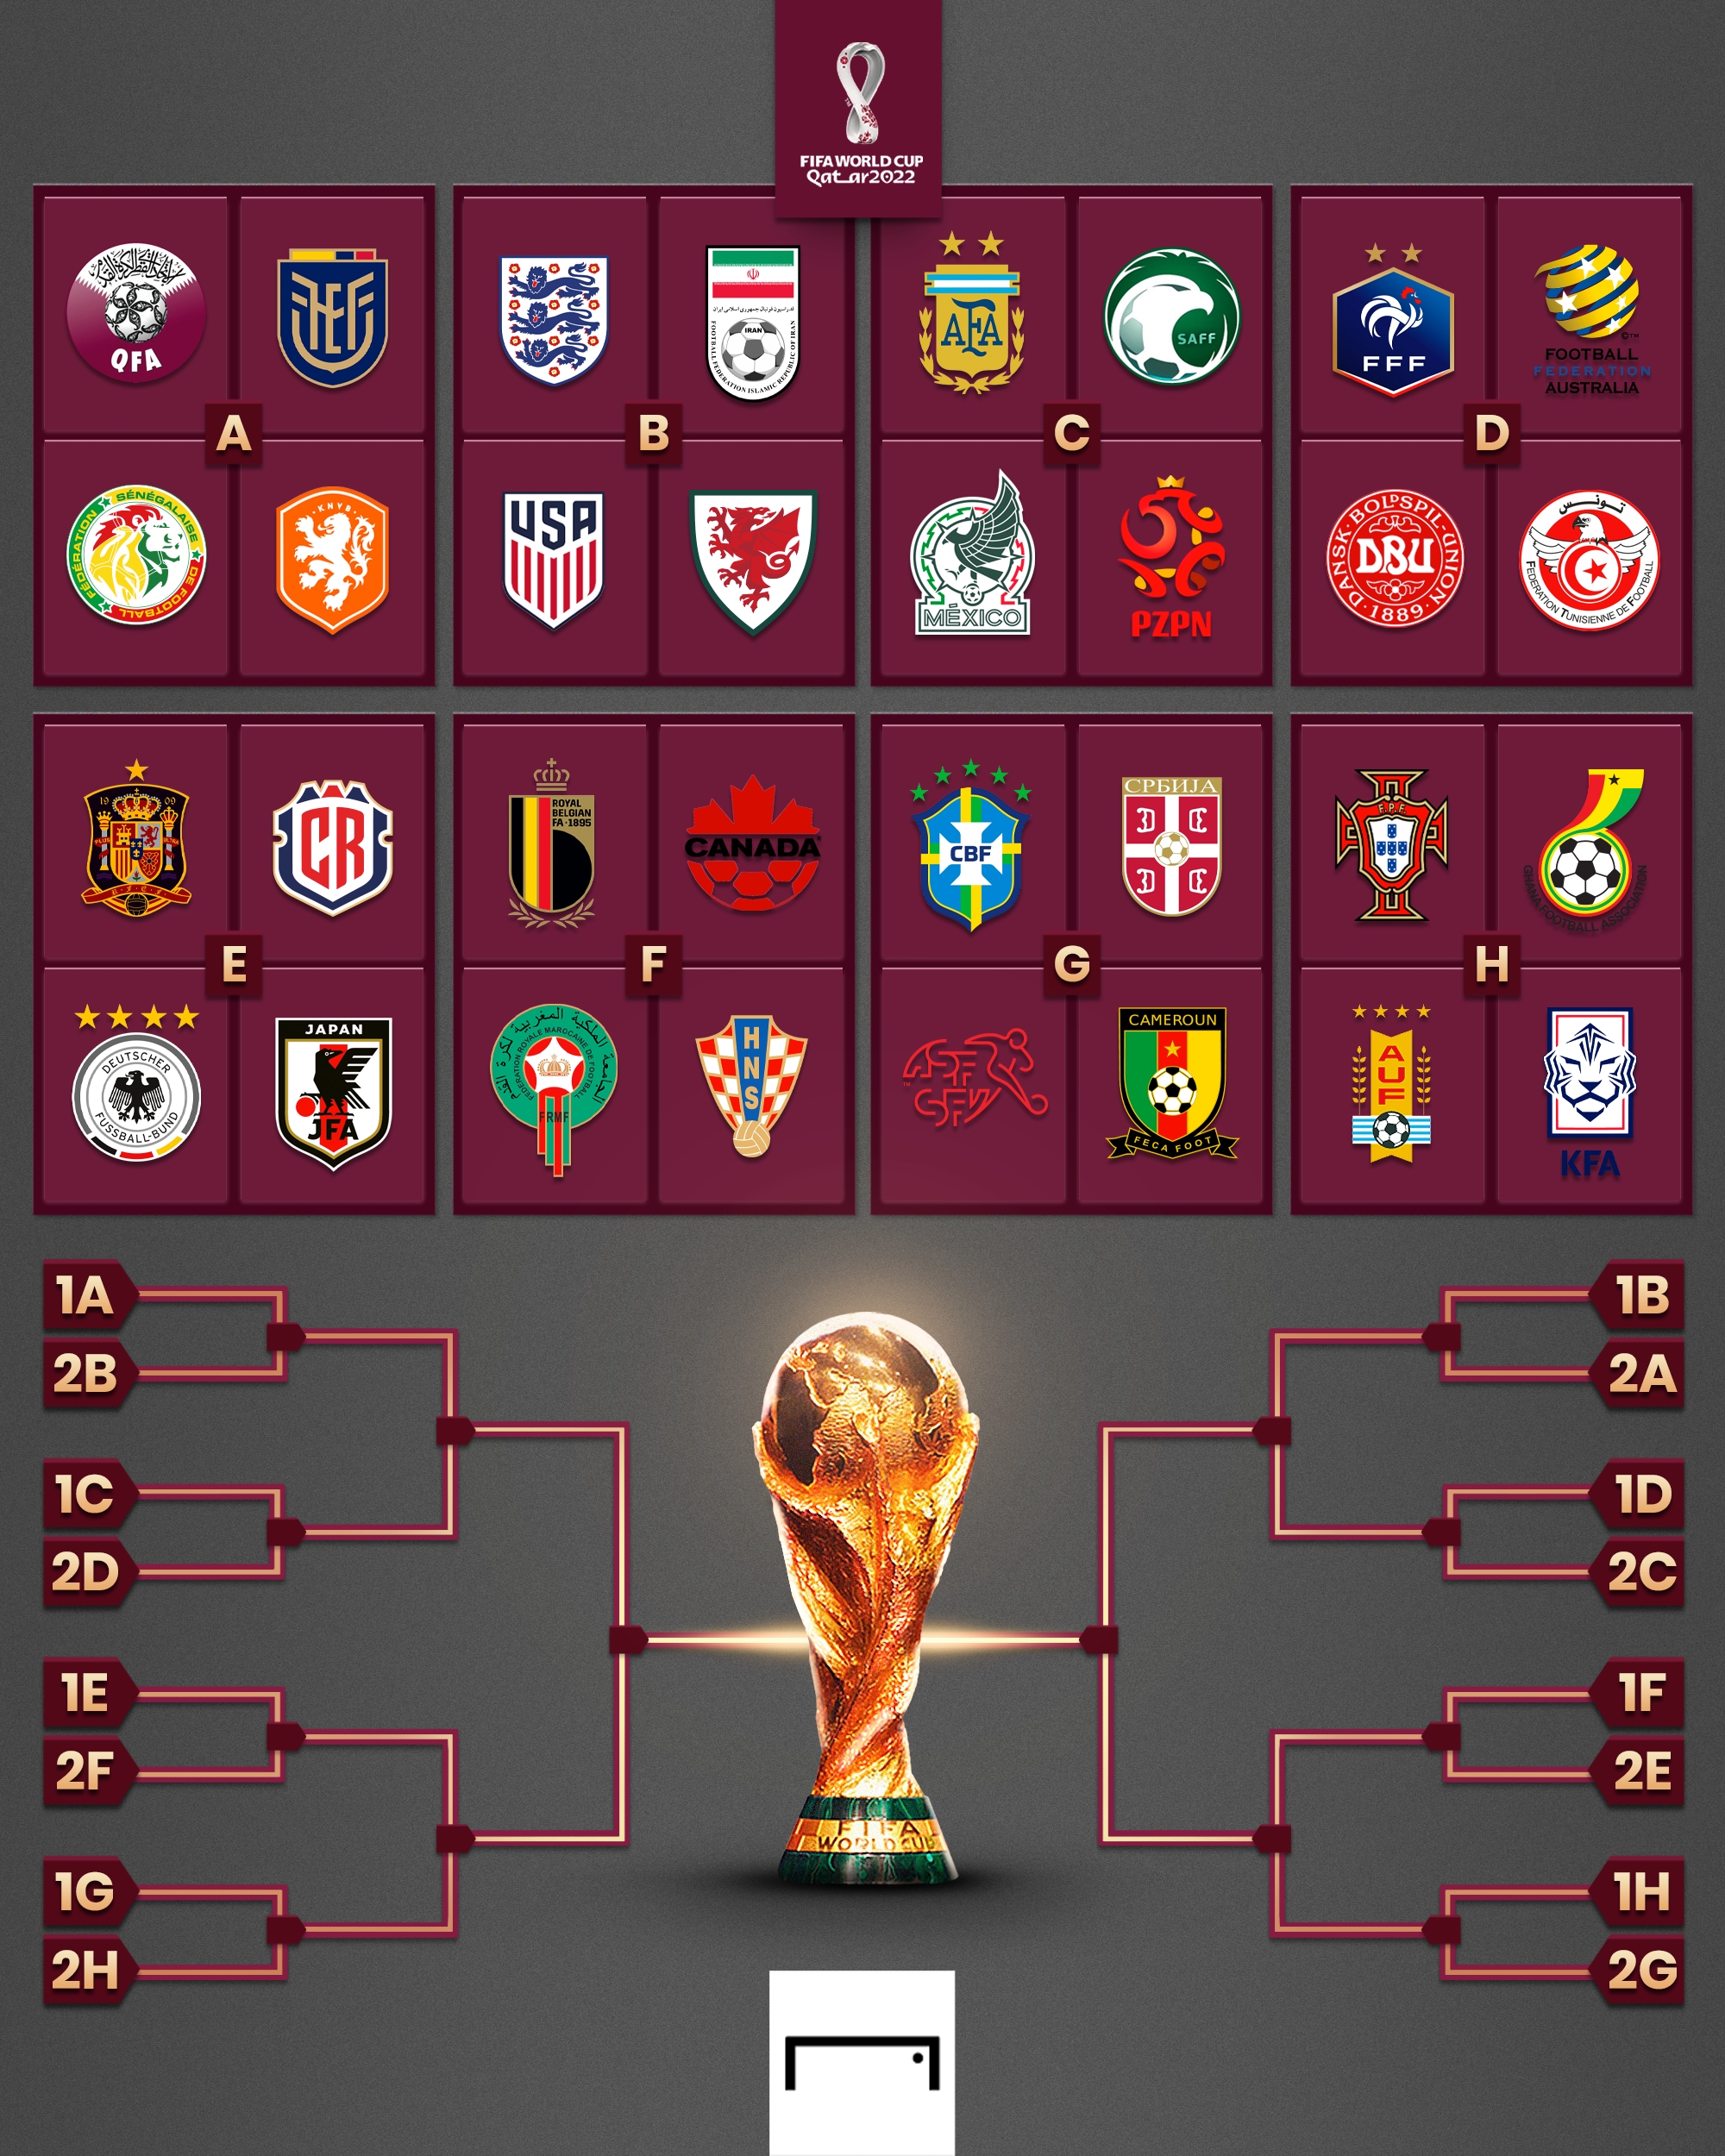 Grupo H Mundial Qatar 2022: Portugal, Ghana, Uruguay Corea del Sur; fechas, partidos, horarios, tabla, posiciones y | Goal.com Espana